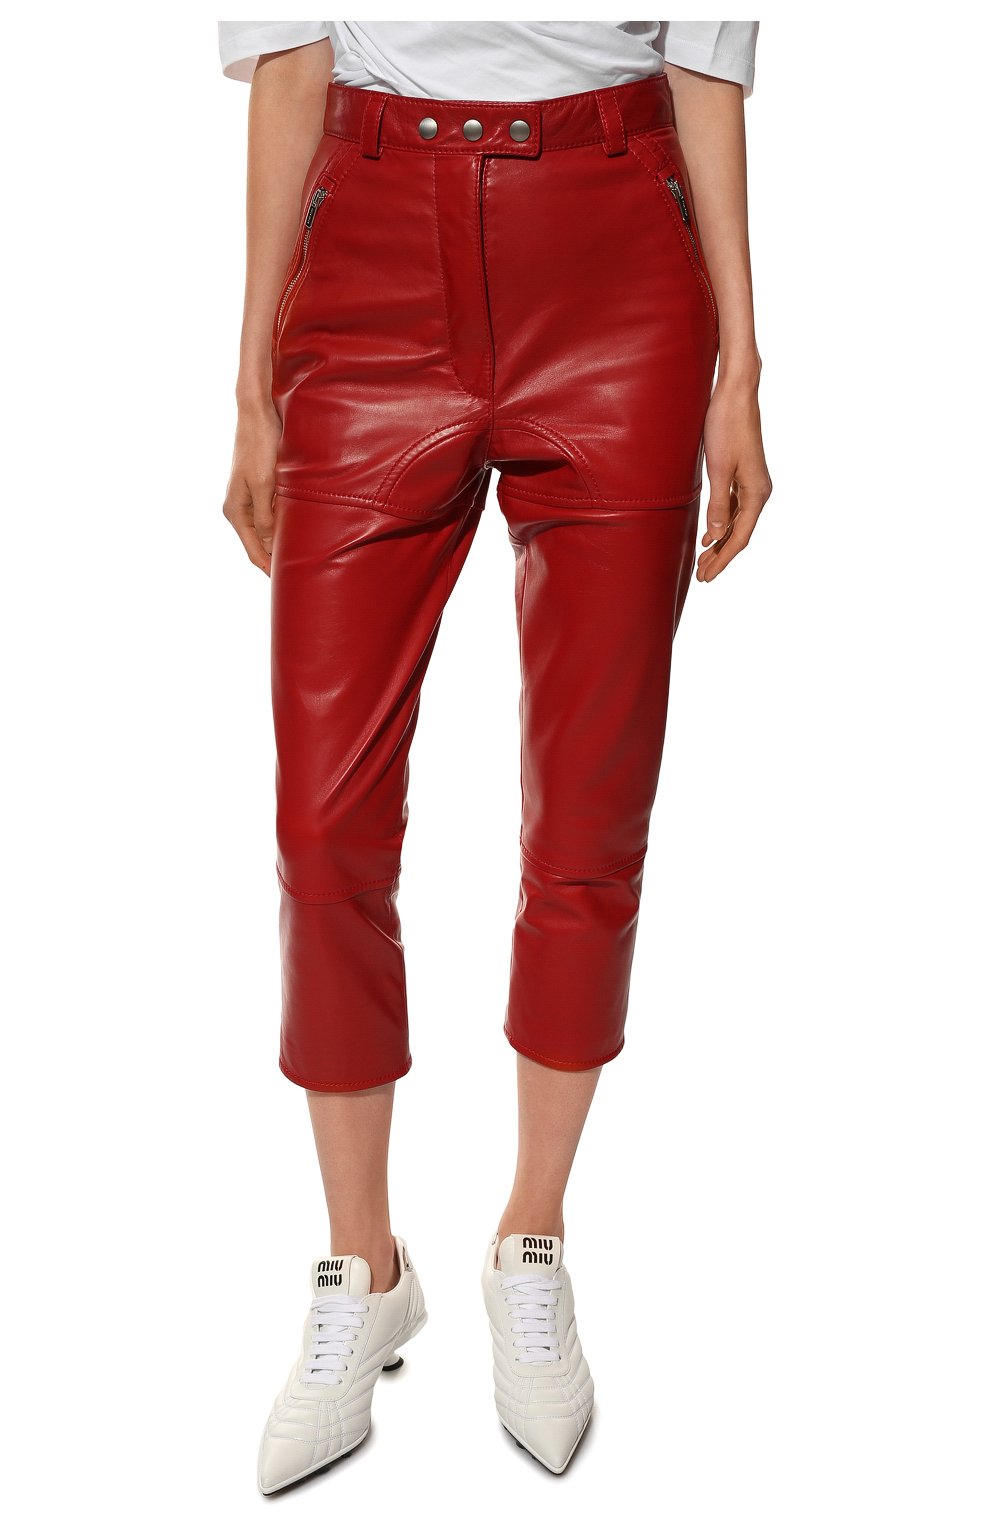 Женские кожаные брюки MIU MIU красного цвета, арт. MPP326-038-F0011 | Фото 3 (Женское Кросс-КТ: Брюки-одежда, Кожаные брюки; Стили: Гранж; Материал внешний: Натуральная кожа; Силуэт Ж (брюки и джинсы): Узкие; Длина (брюки, джинсы): Укороченные)